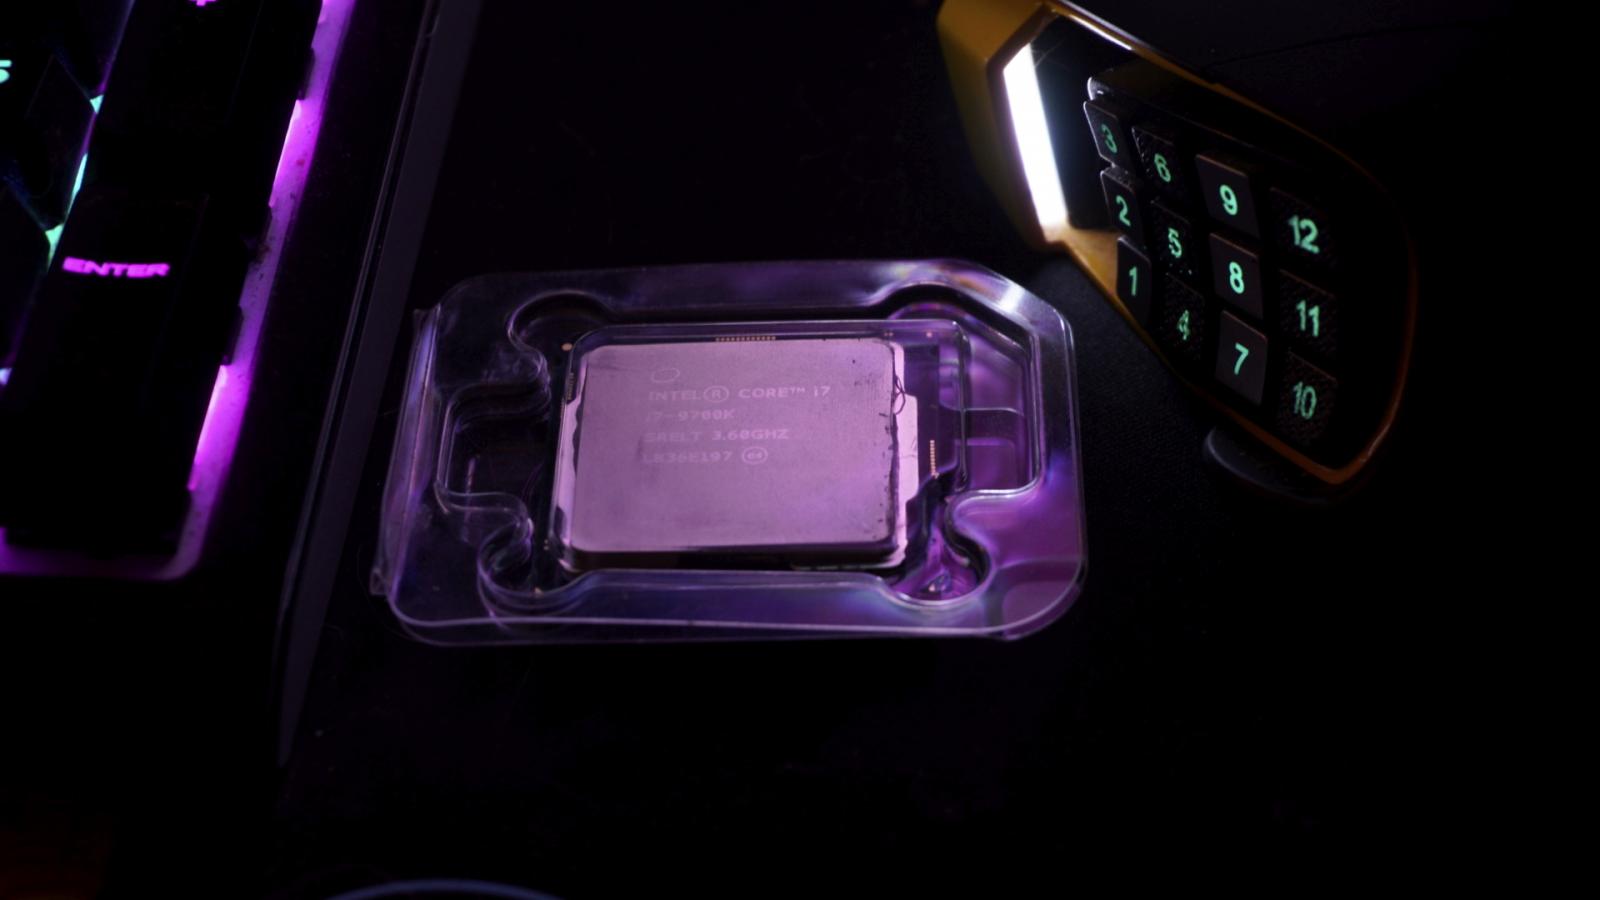 For sale Intel i7-9700k